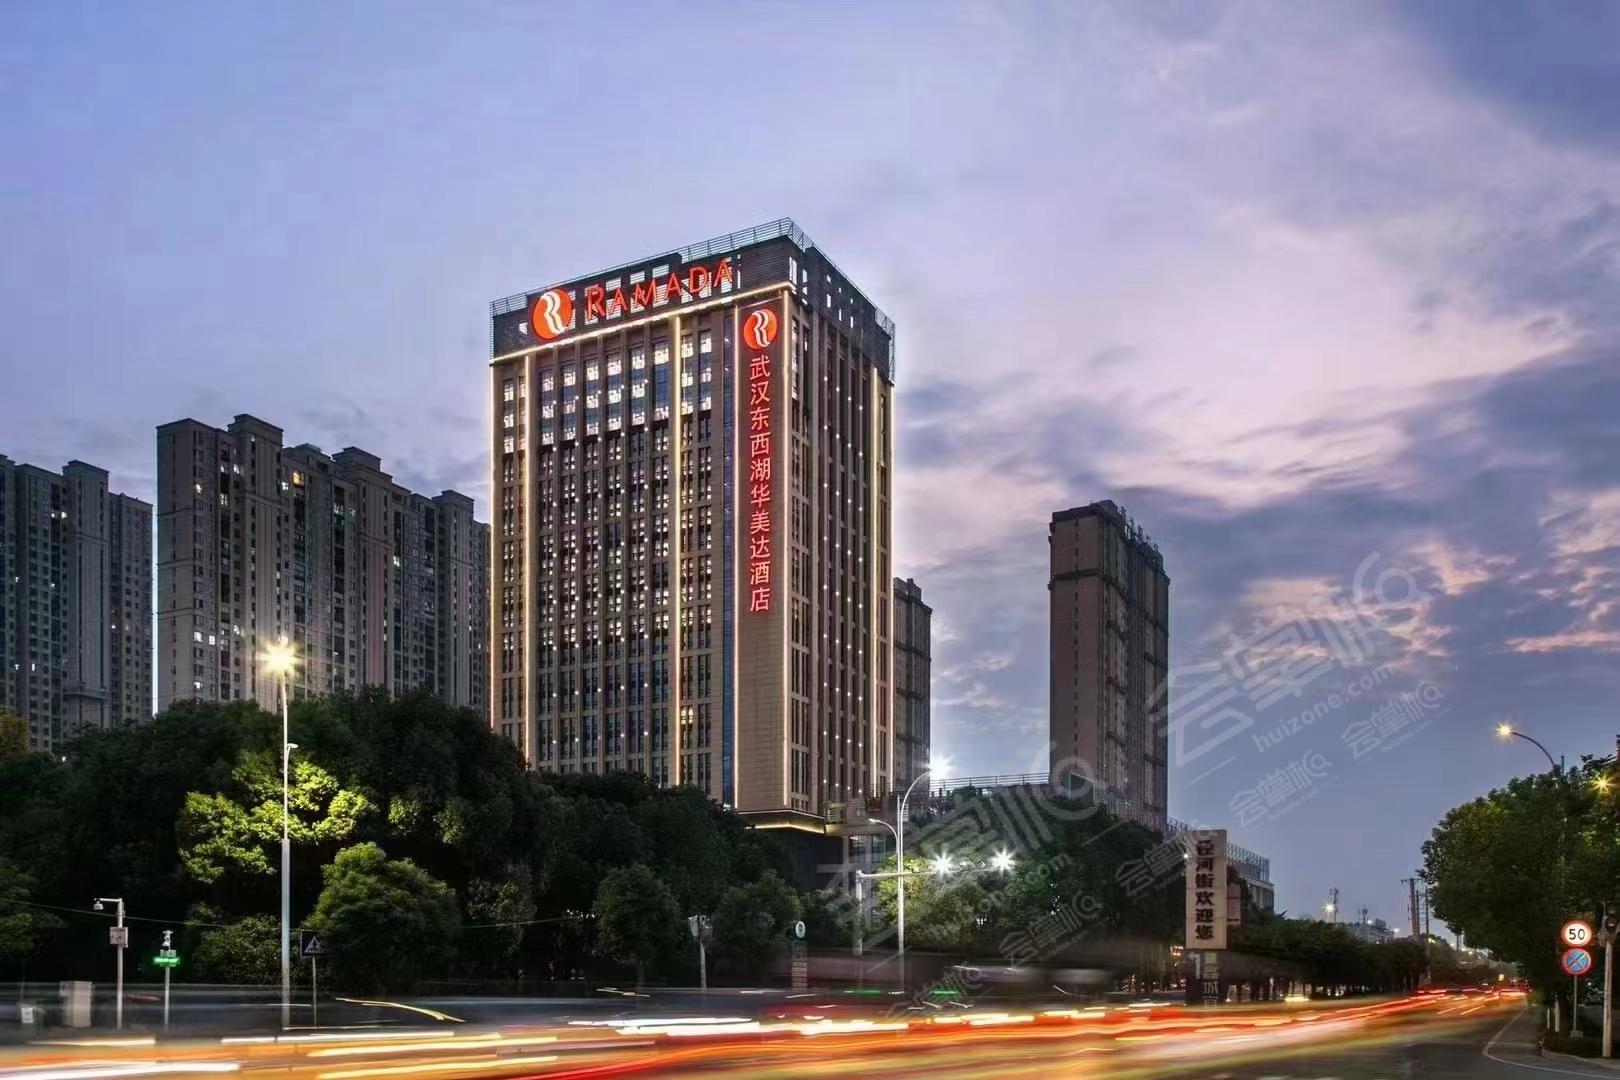 武汉五星级酒店最大容纳1000人的会议场地|武汉东西湖华美达酒店的价格与联系方式